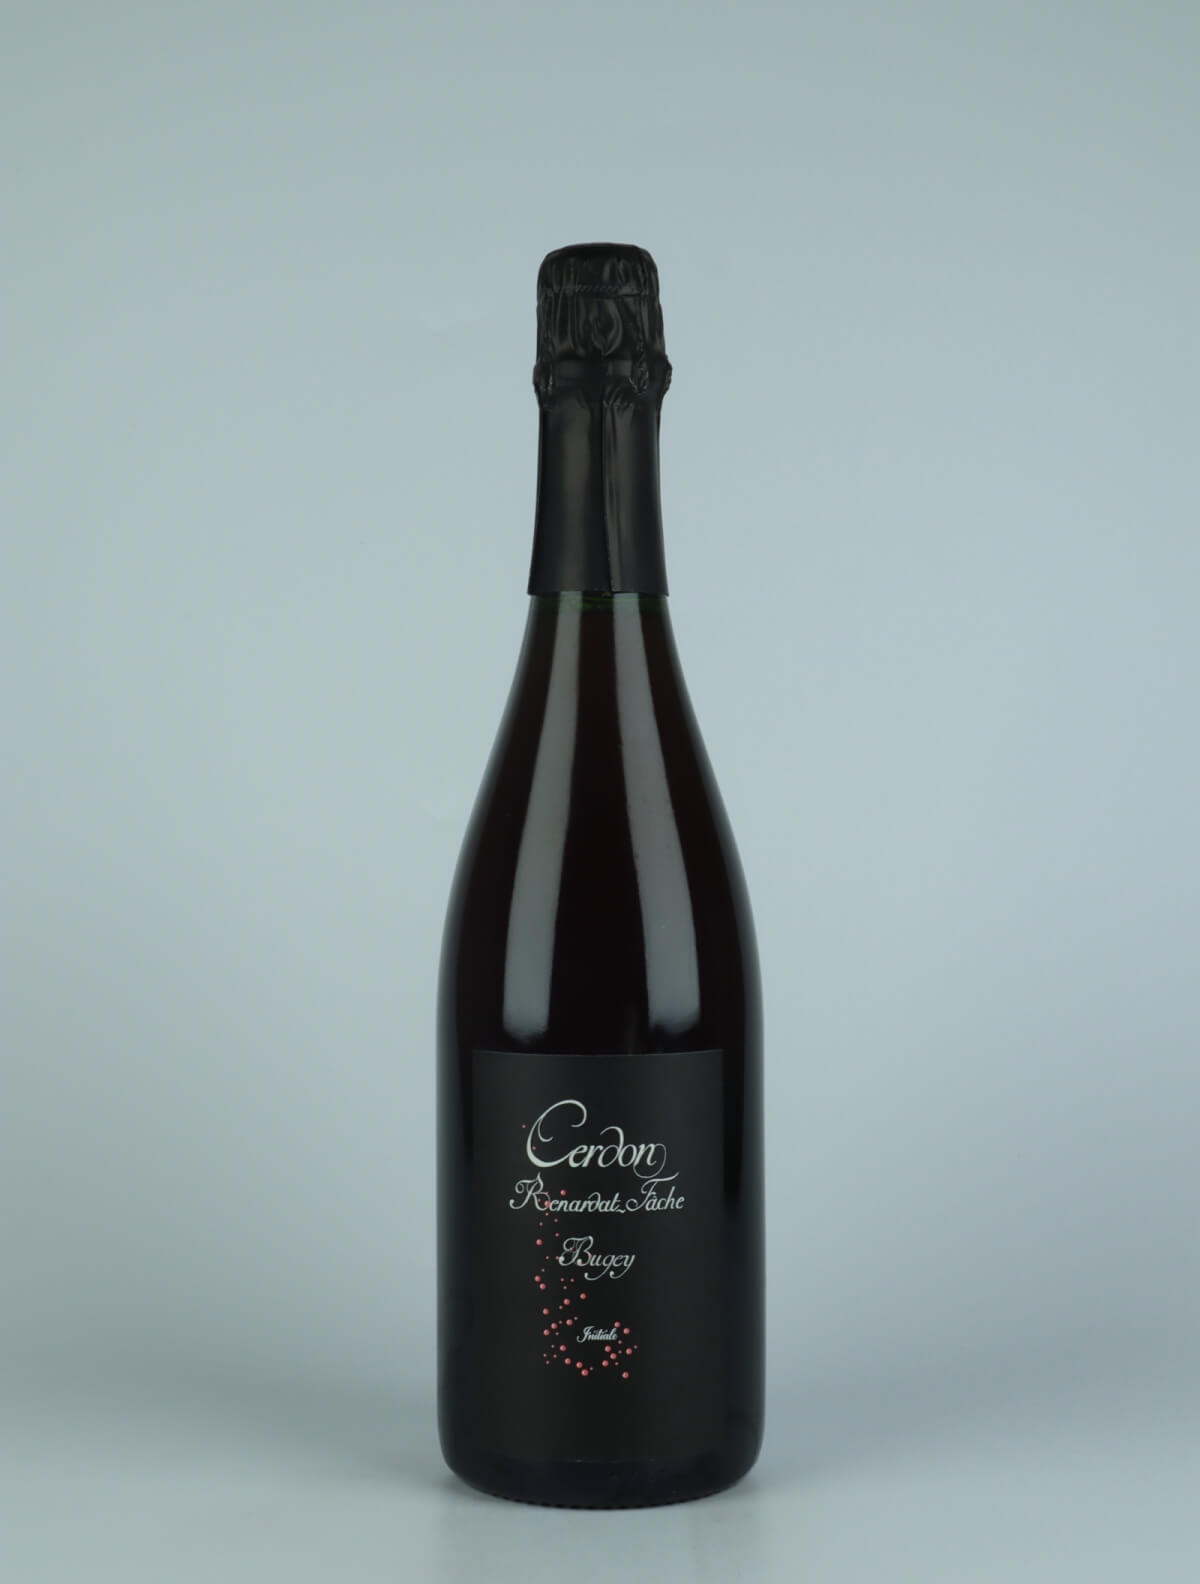 En flaske N.V. Bugey Cerdon - Initiale Sød vin fra Renardat Fache, Bugey i Frankrig